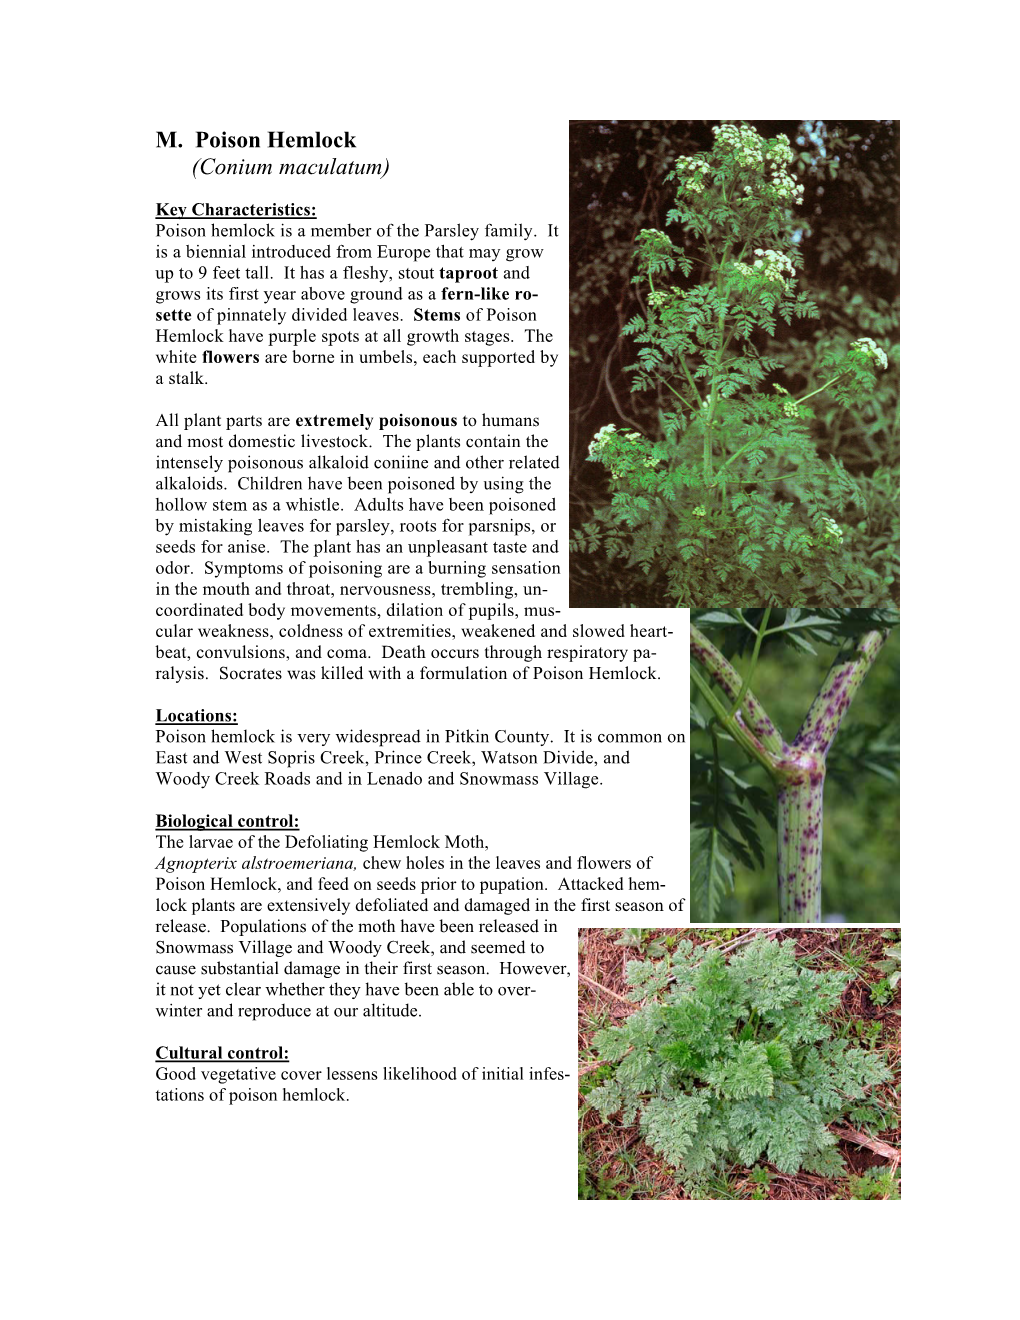 M. Poison Hemlock (Conium Maculatum)